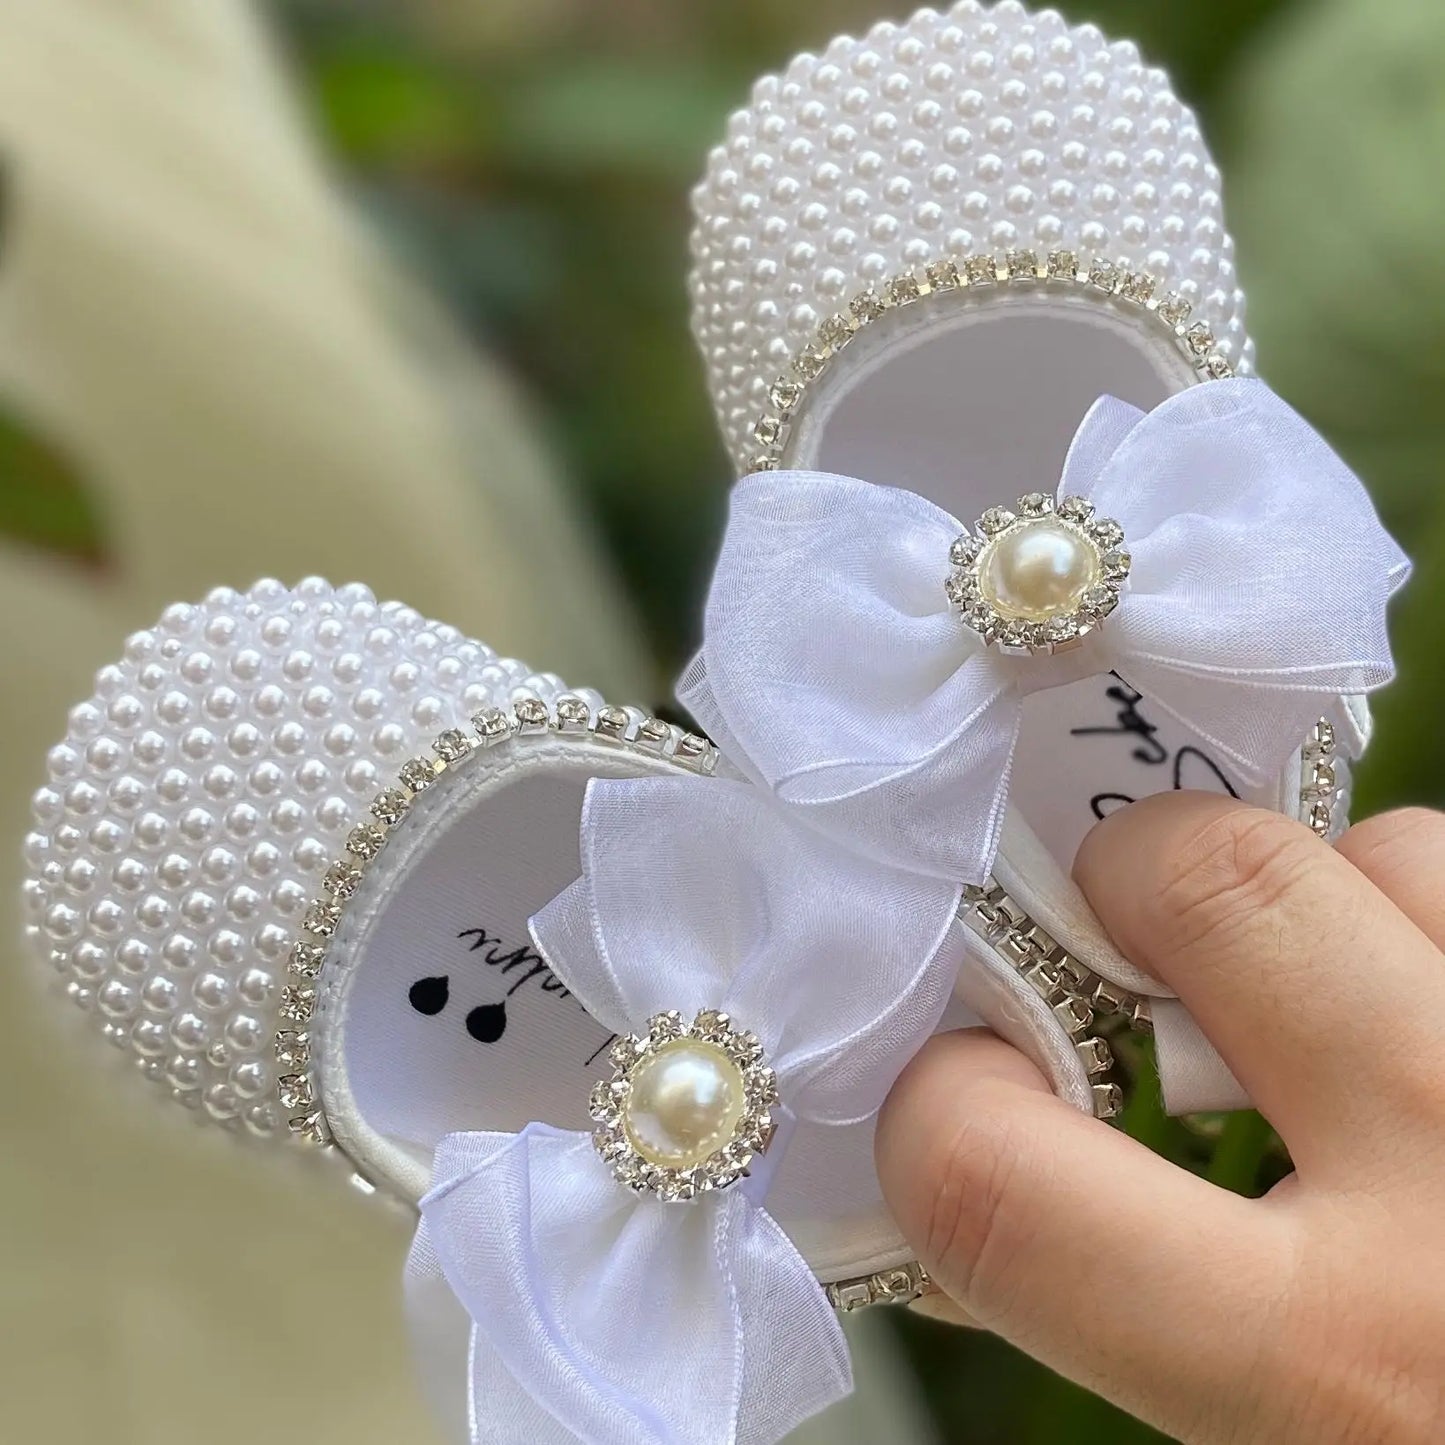 BABY HOUSE - Dollbling perles blanches à la main Bling strass bébé berceau chaussures baptême tenue mariage éclat organza baptême 0-3m chaussures